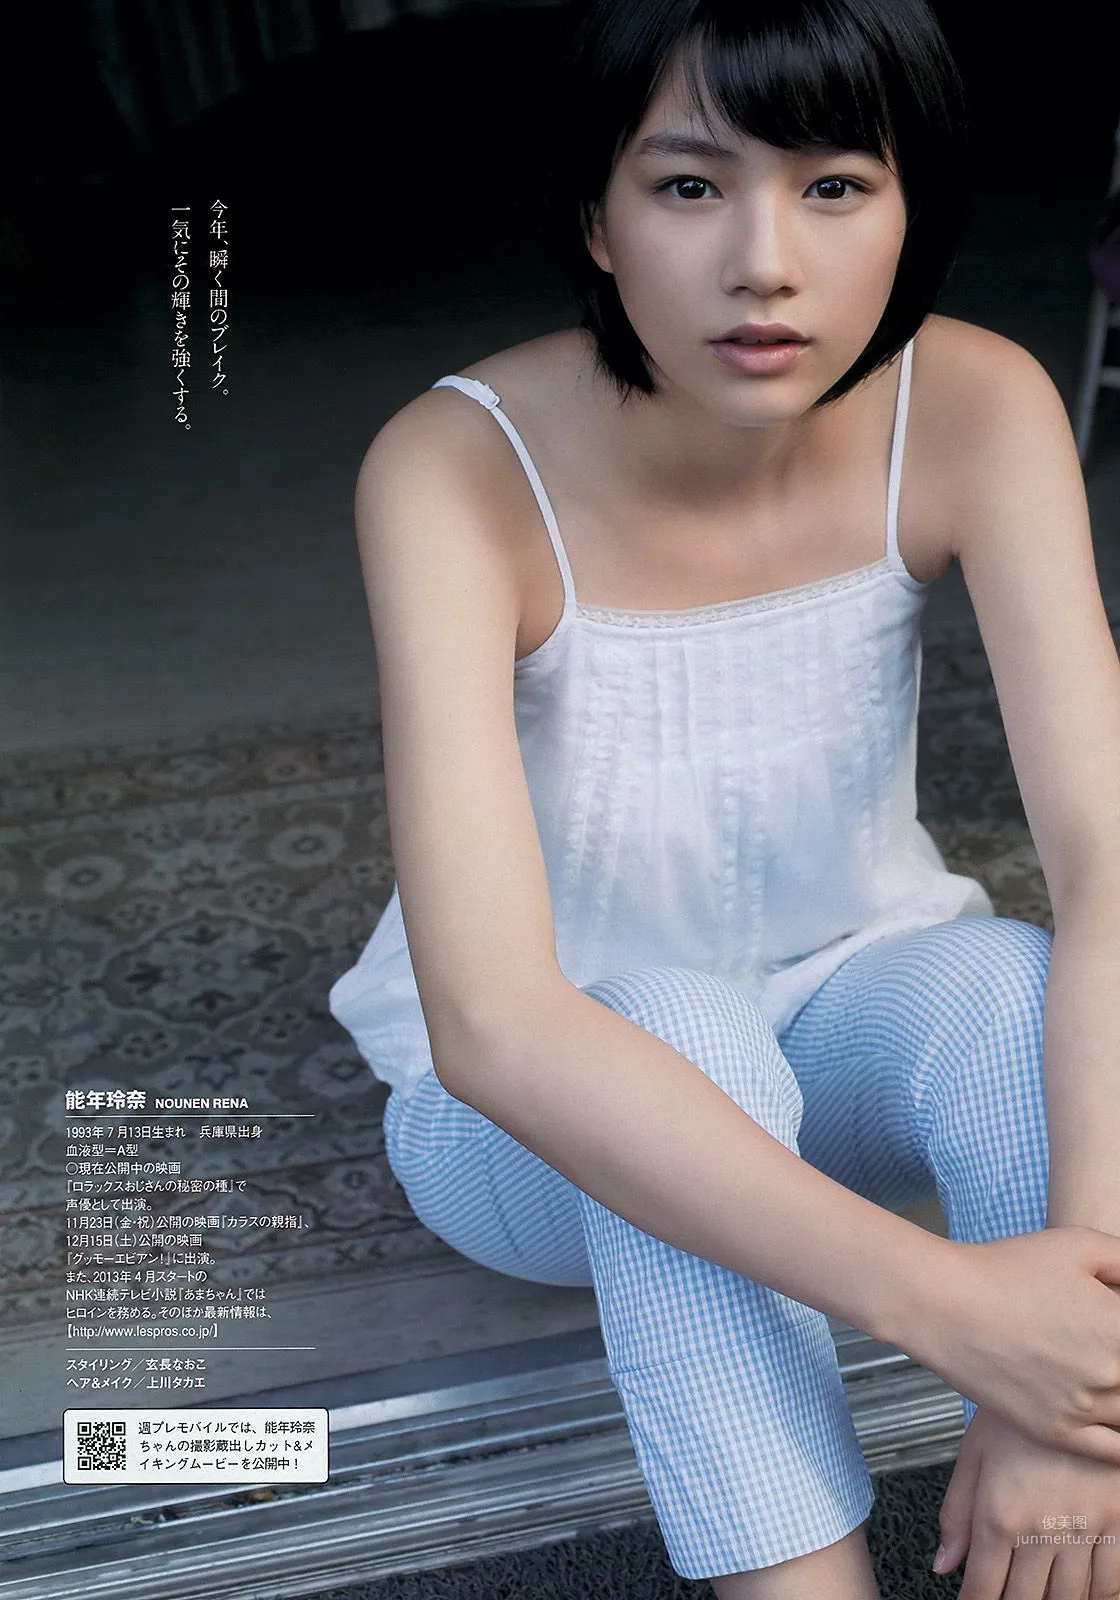 能年玲奈 AKB48 石橋杏奈 亜里沙 Ili 太田千晶 [Weekly Playboy] 2012年No.45 写真杂志5